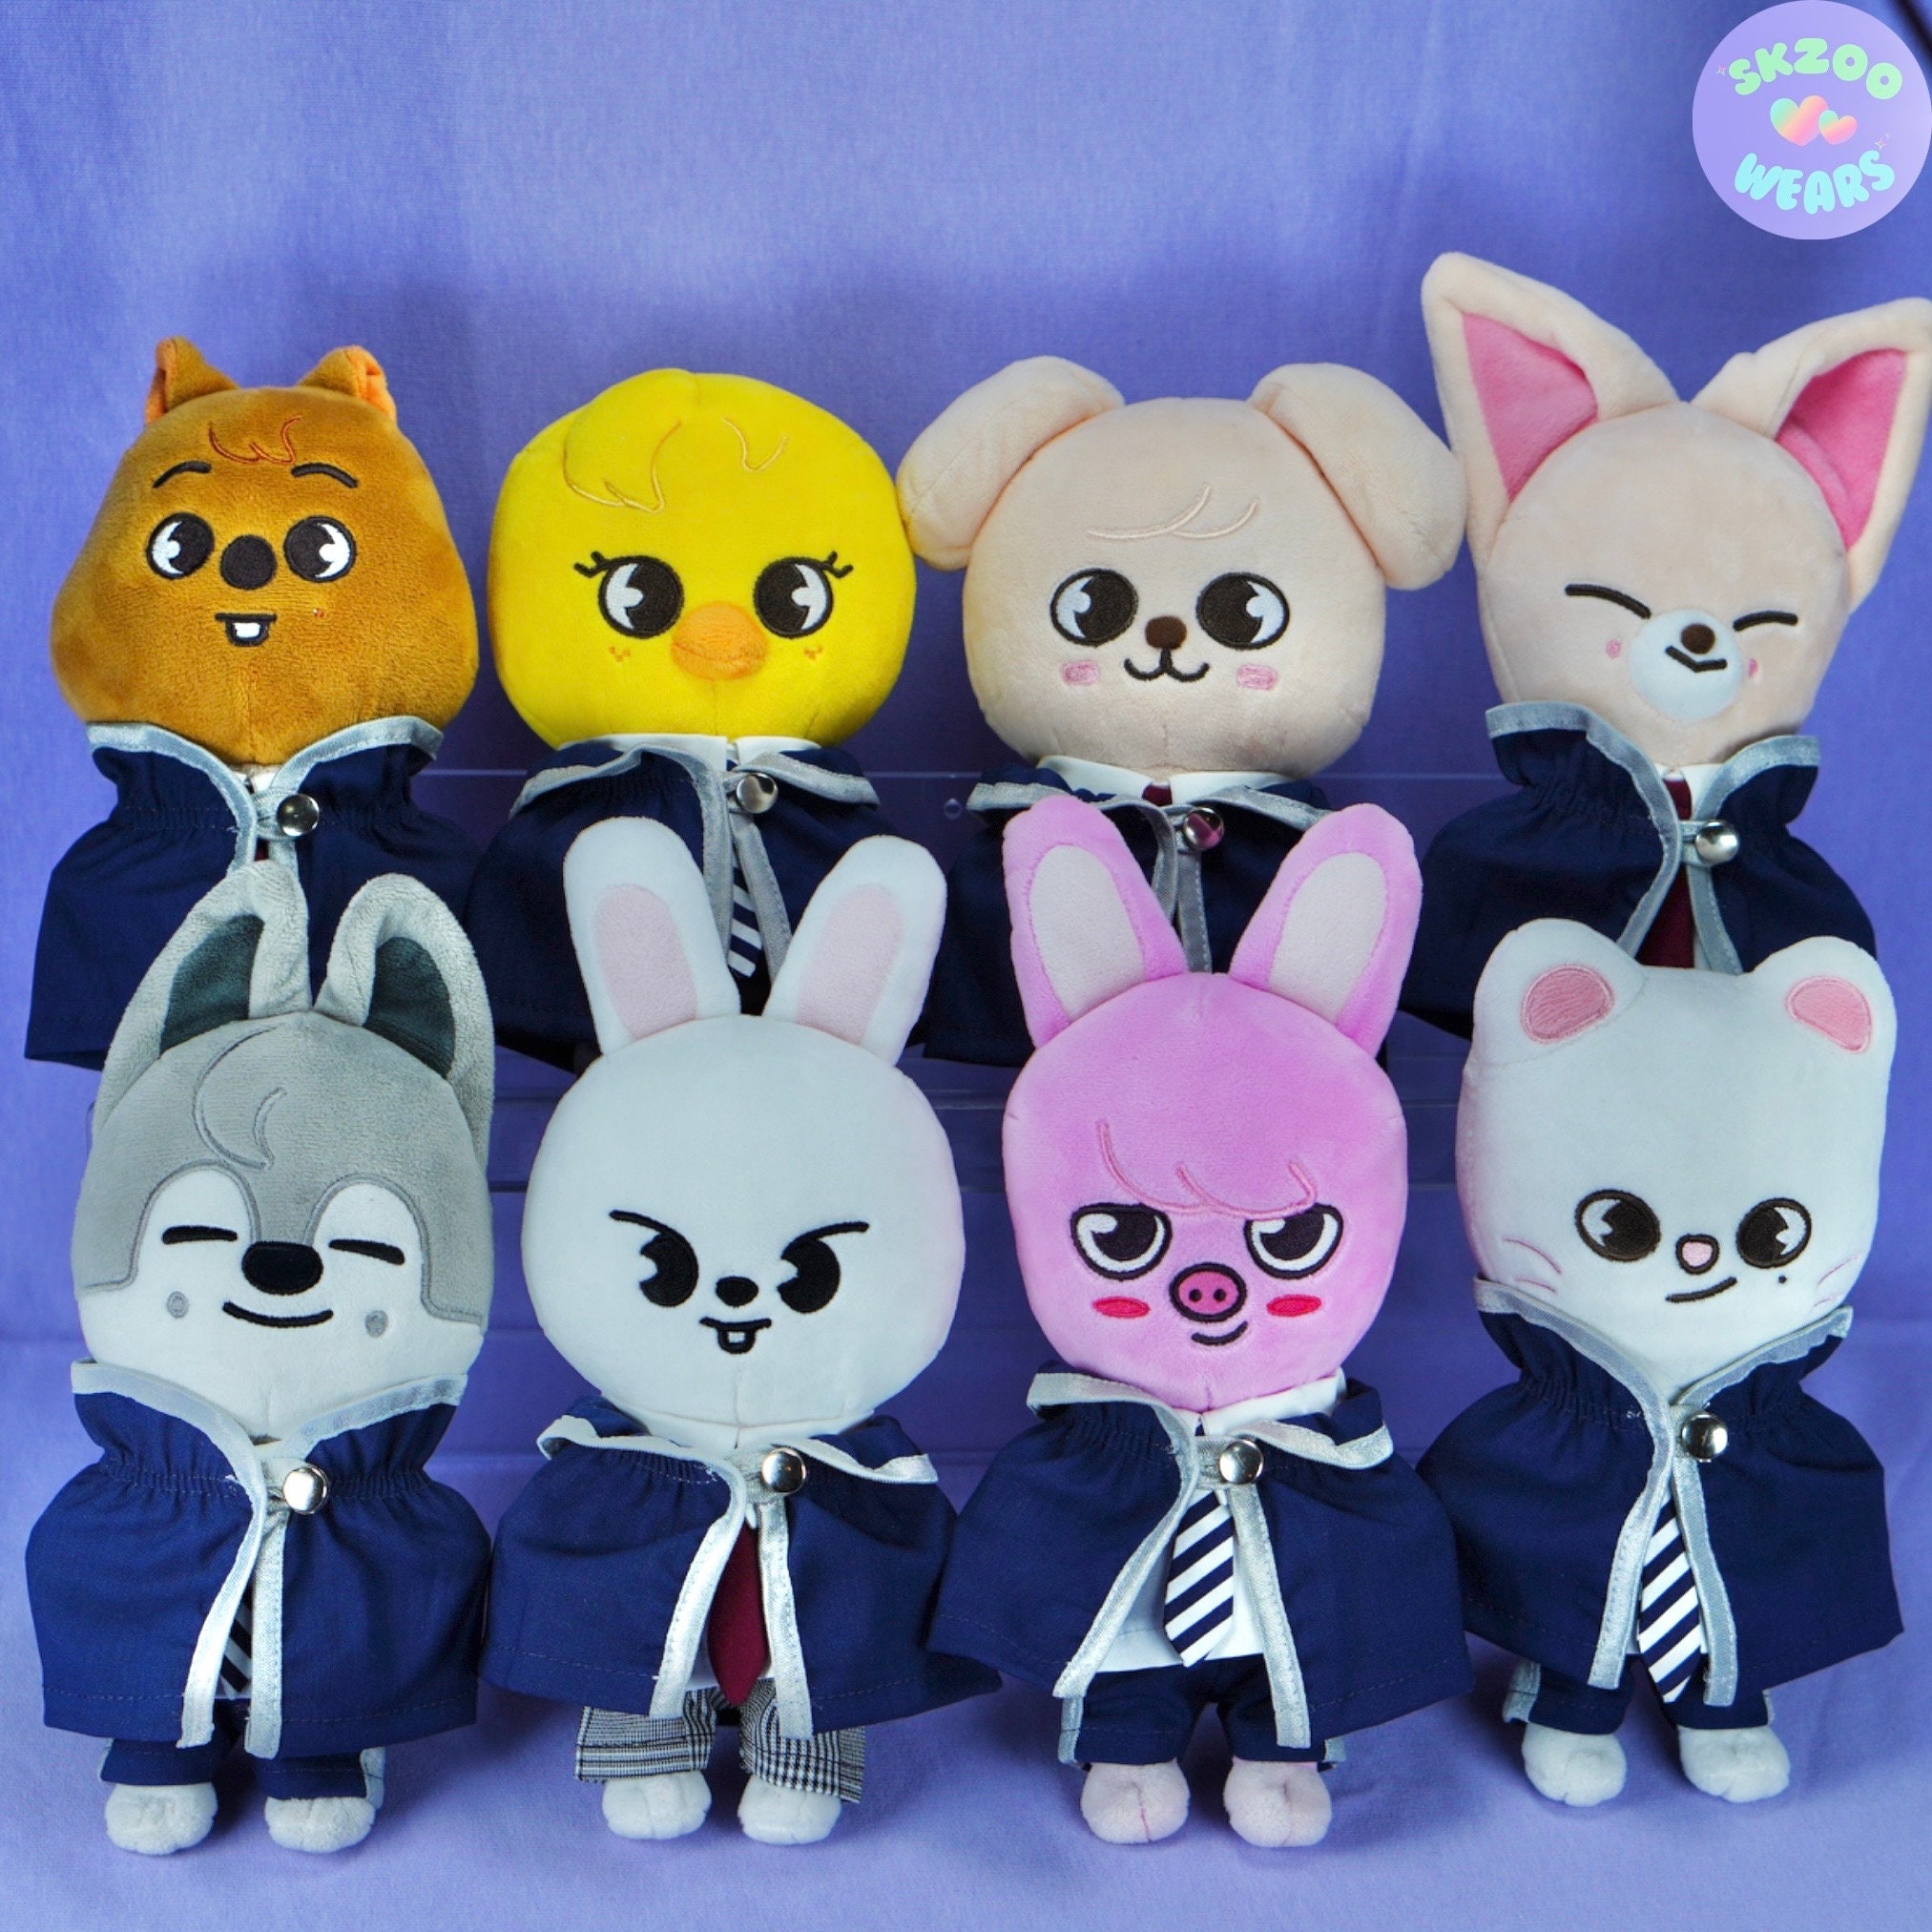 Skzoo Plush Doll Clothing – Sugar Seoul